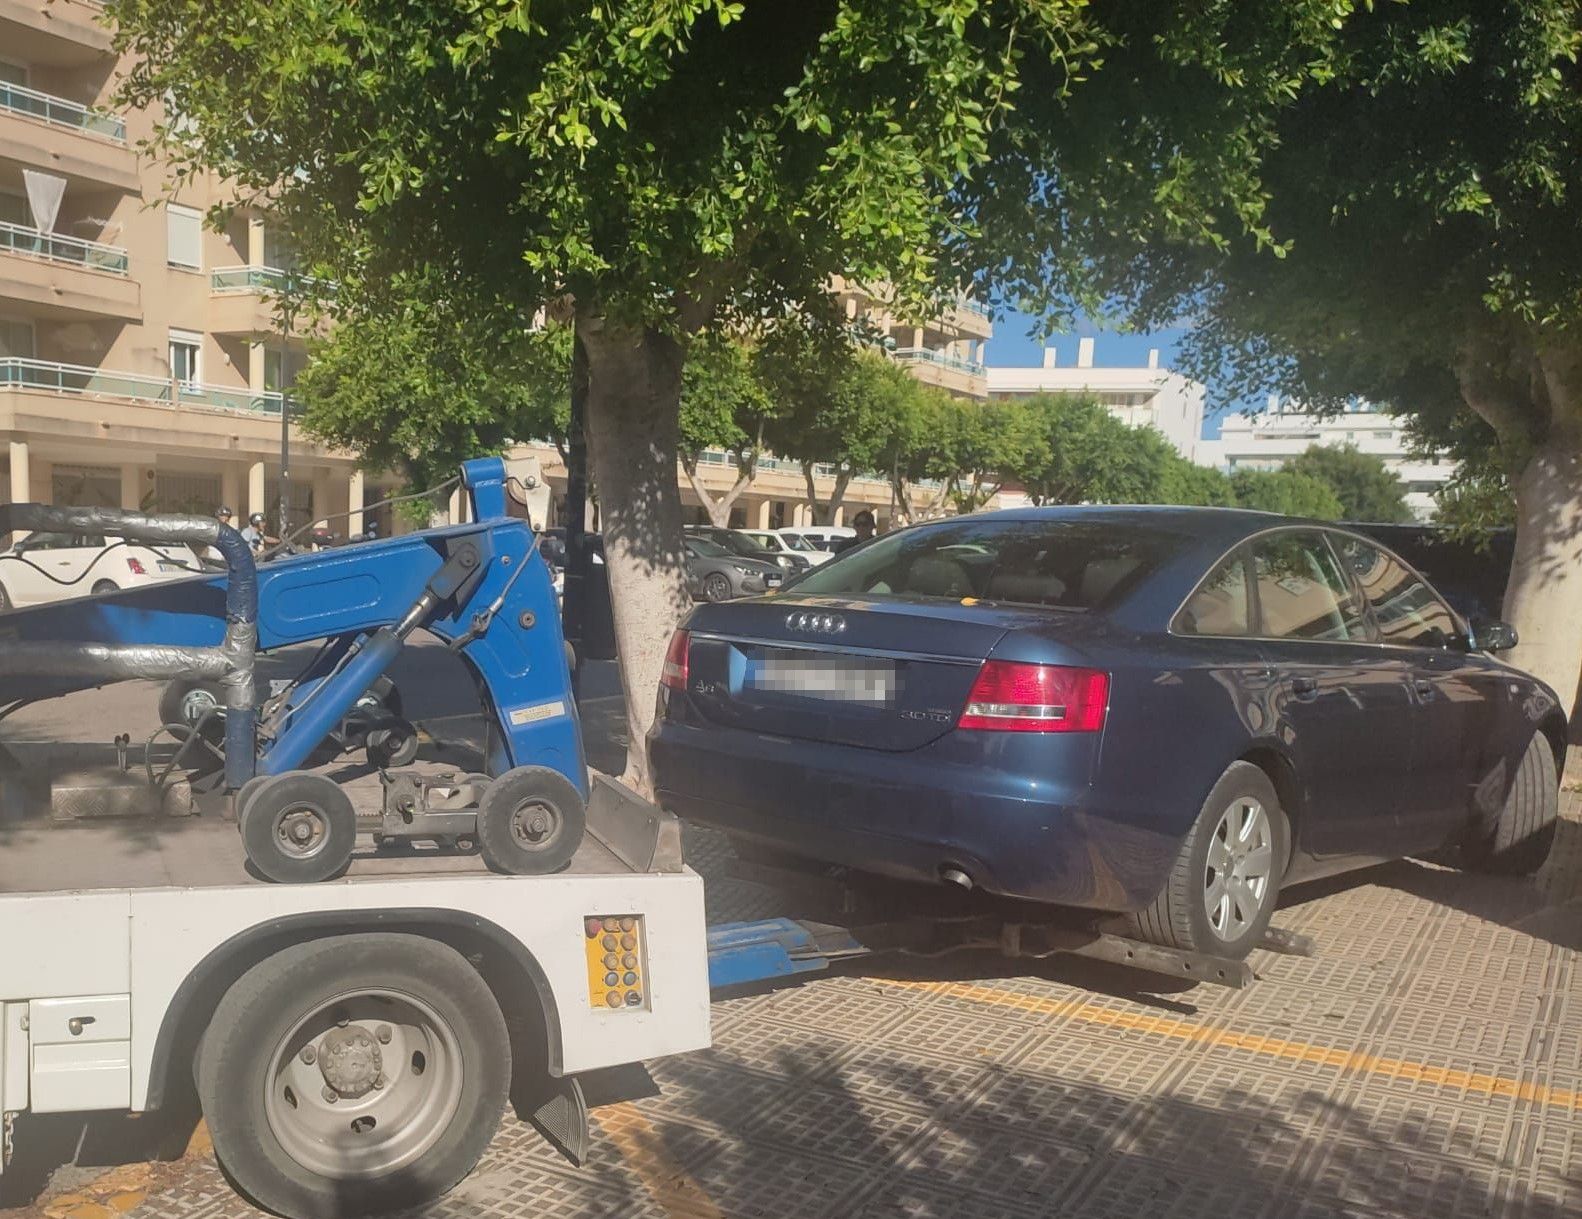 La grúa retira coches aparcados en al acera en Platja d'en Bossa